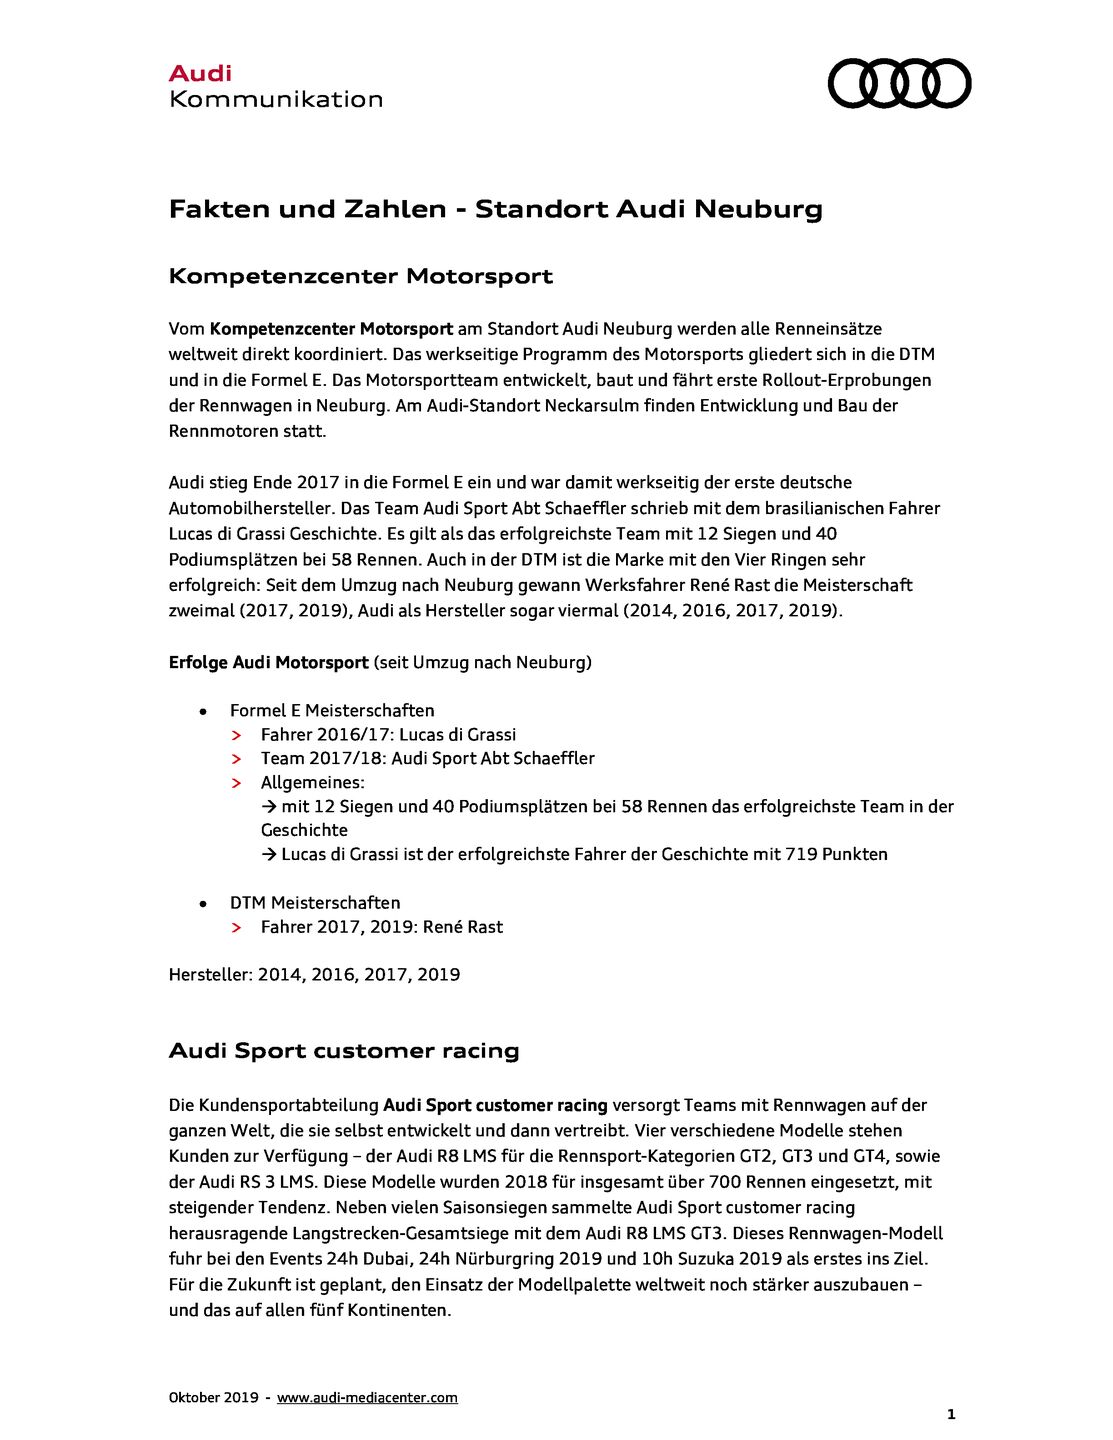 Fakten und Zahlen - Standort Audi Neuburg